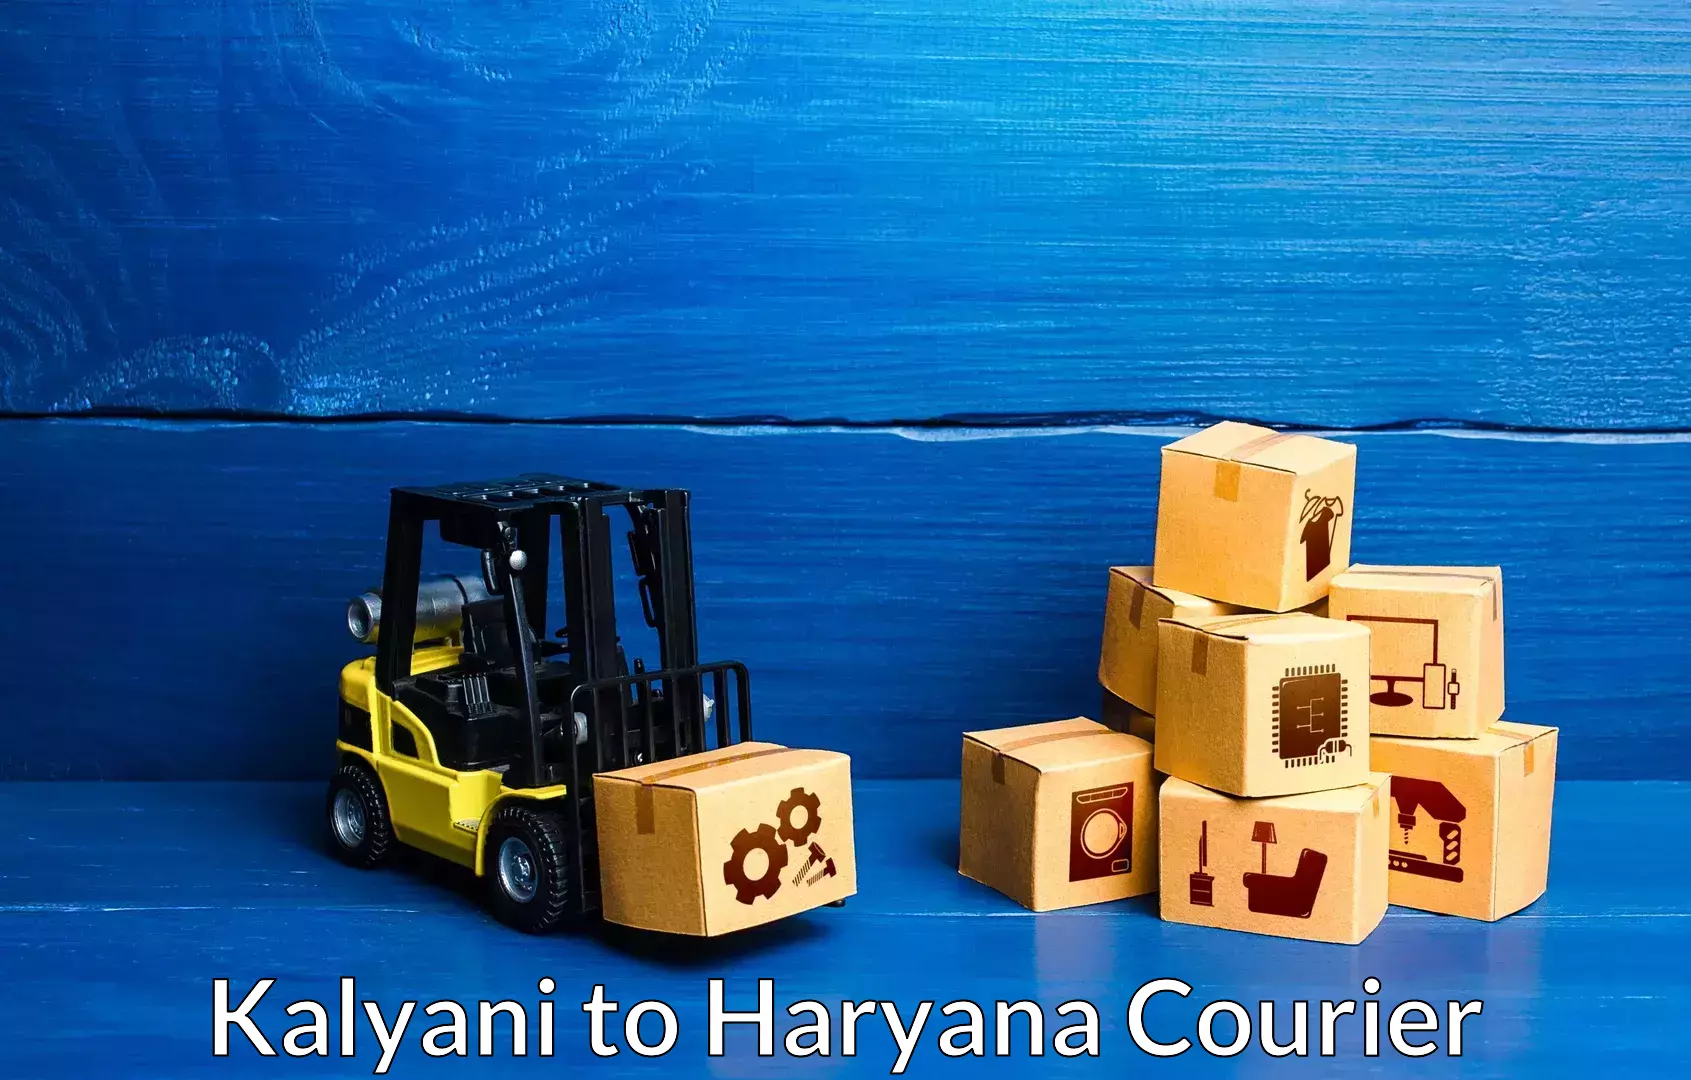 Furniture delivery service Kalyani to Dharuhera